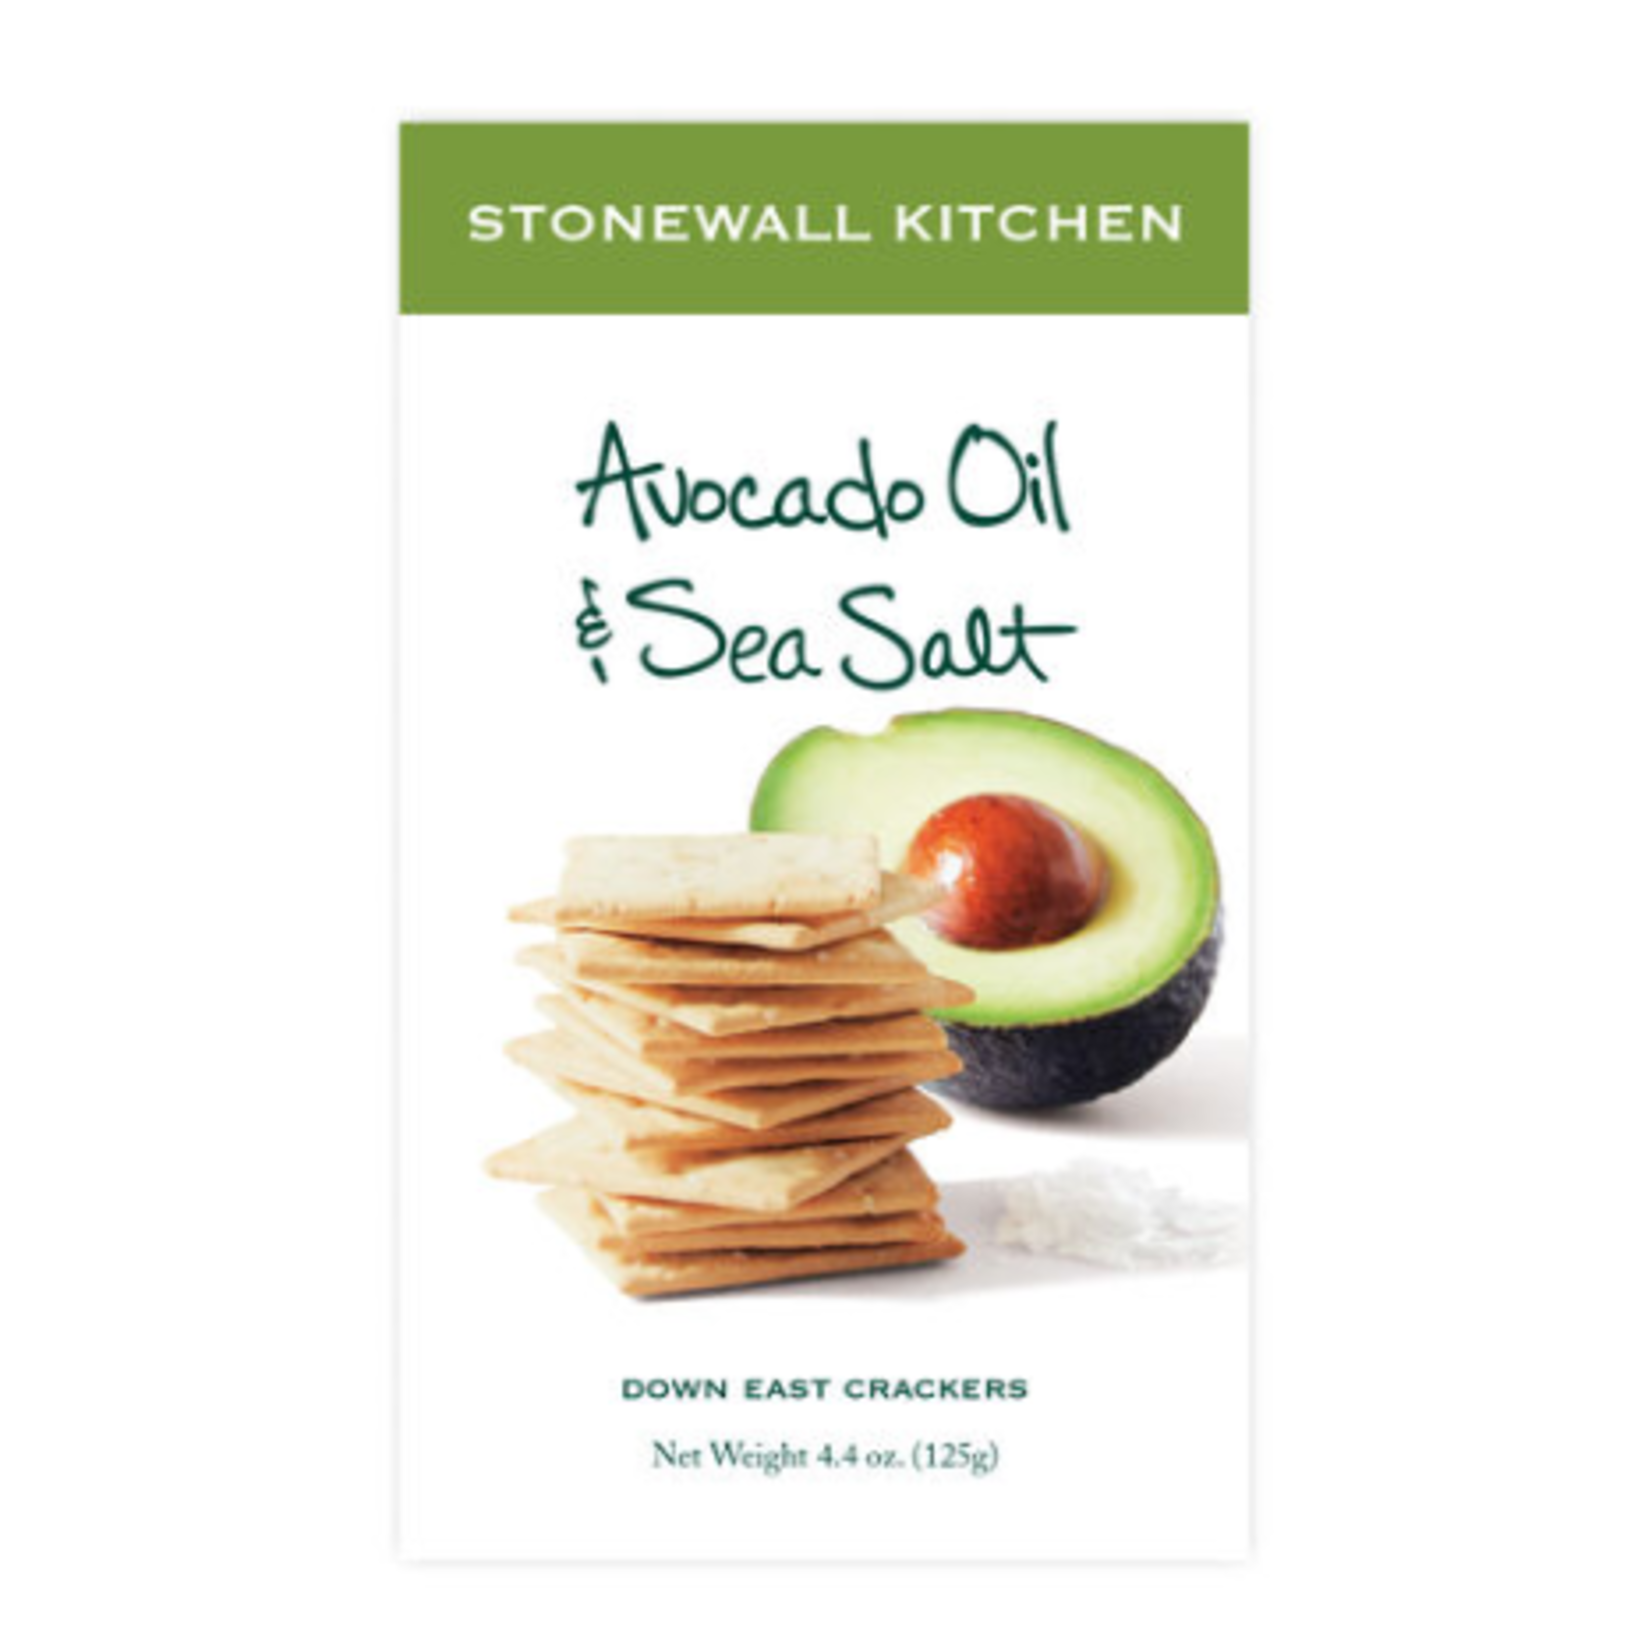 Stonewall Kitchen Avocado Oil & Sea Salt Cracker 4.4oz